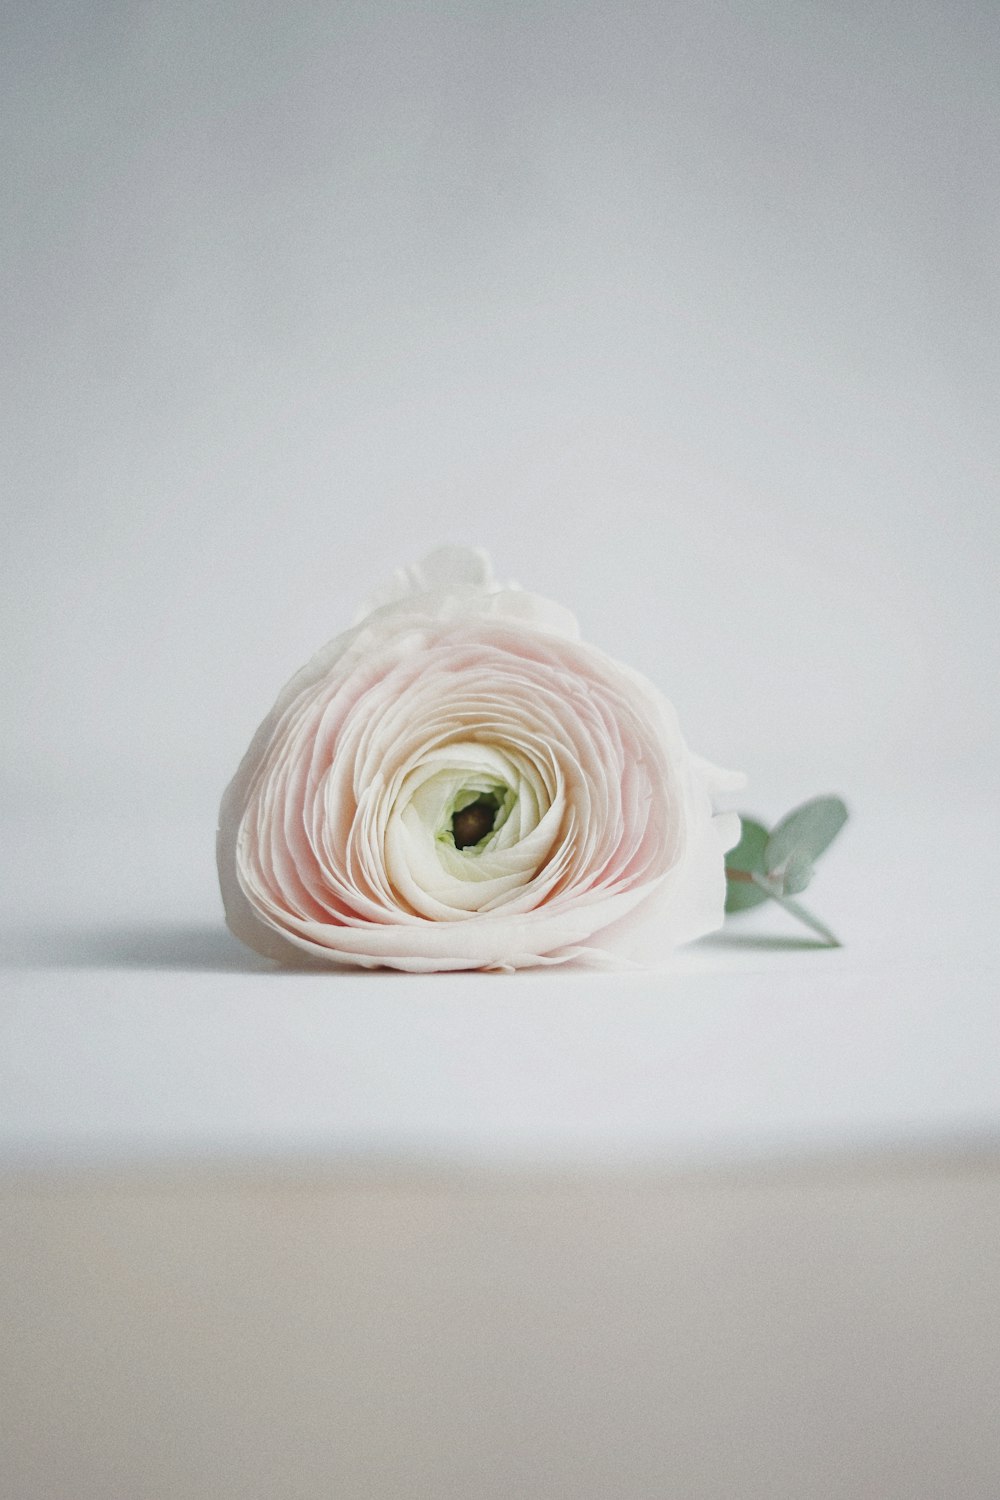 white rose flower on table